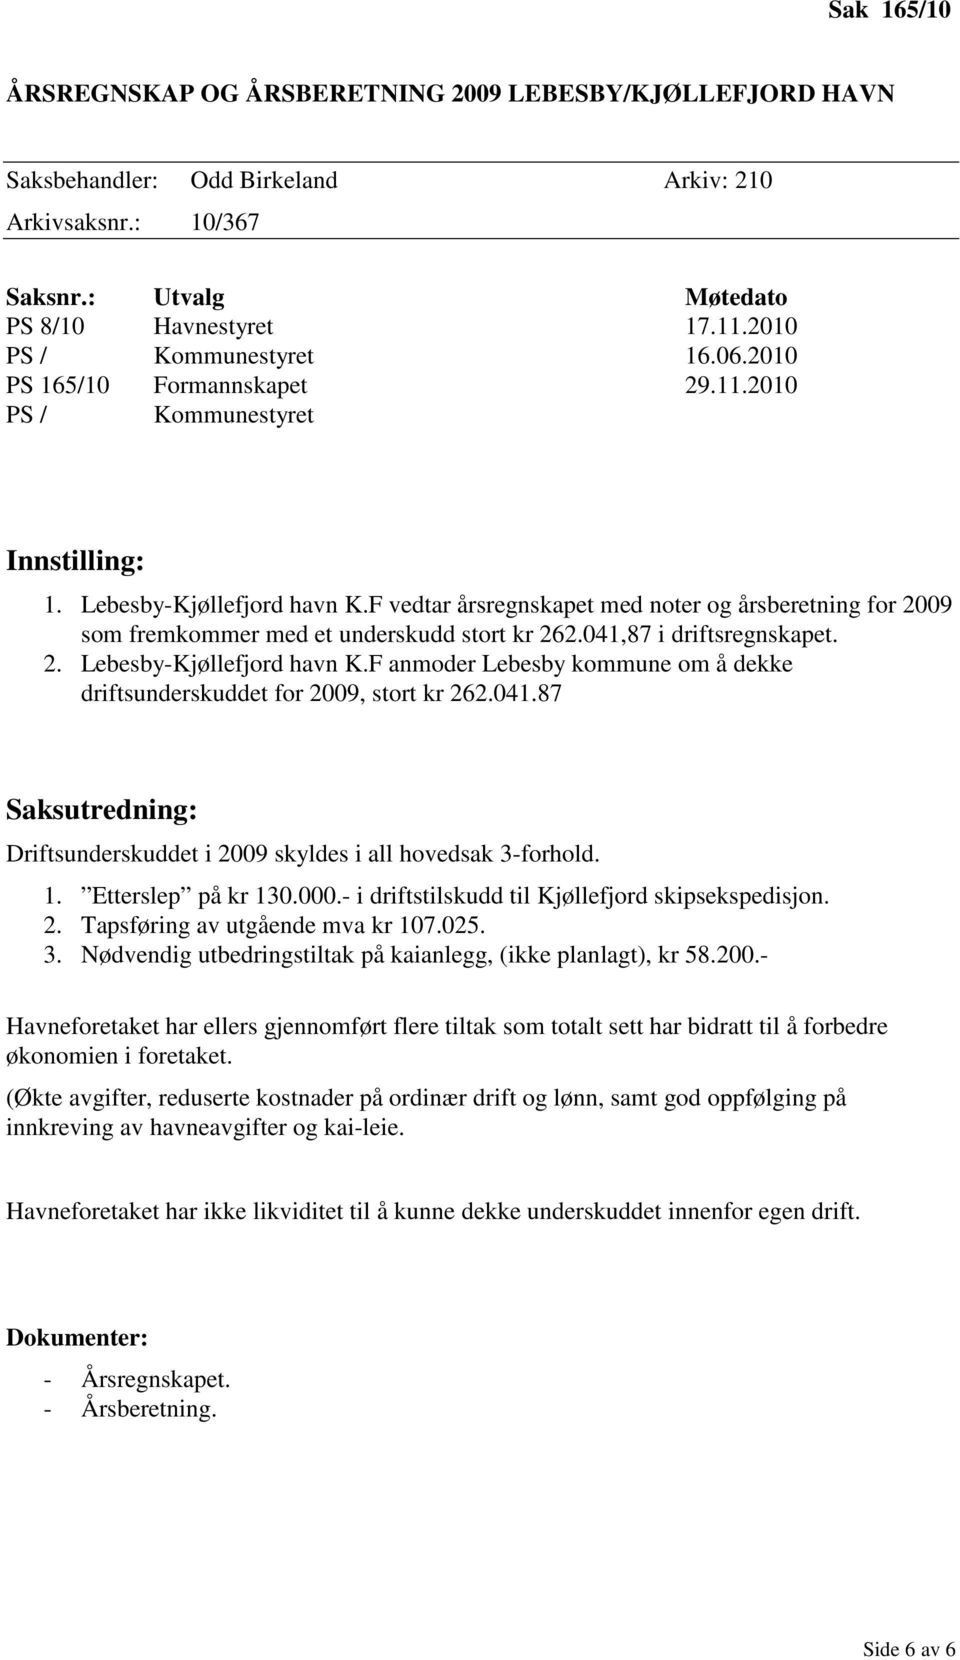 041,87 i driftsregnskapet. 2. Lebesby-Kjøllefjord havn K.F anmoder Lebesby kommune om å dekke driftsunderskuddet for 2009, stort kr 262.041.87 Saksutredning: Driftsunderskuddet i 2009 skyldes i all hovedsak 3-forhold.